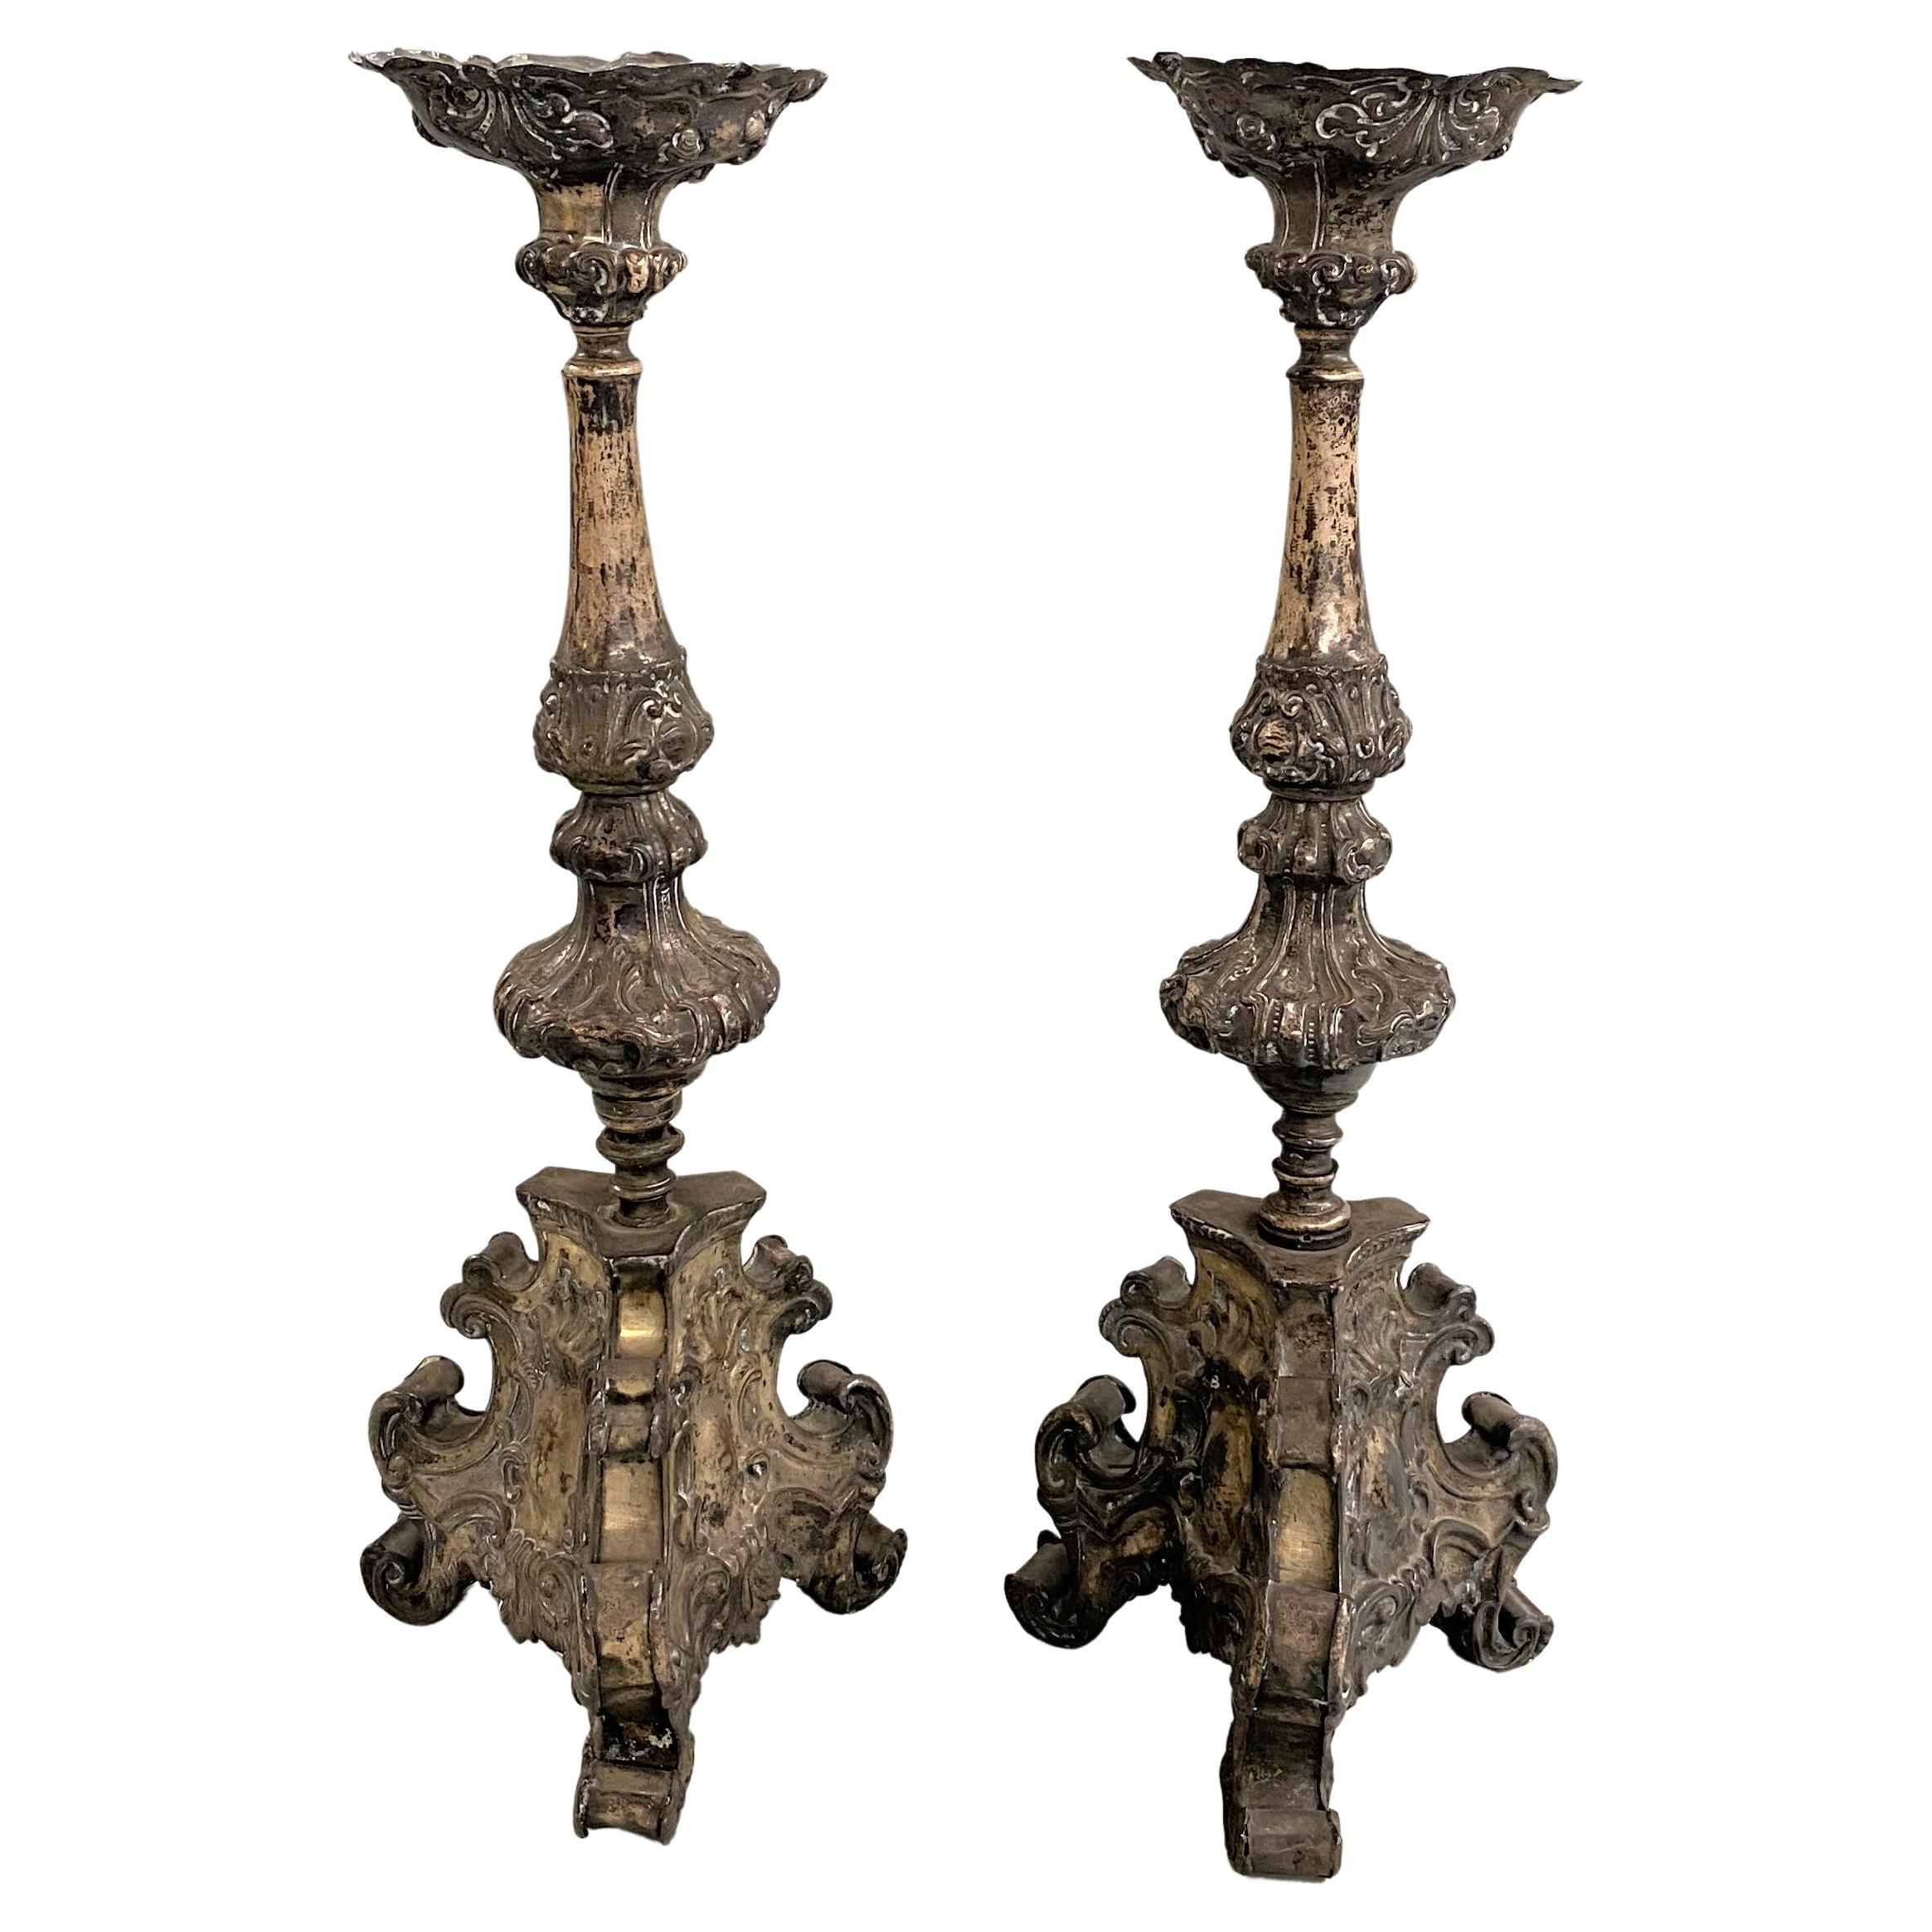 Paire de bougeoirs en métal pressé de style baroque italien du 18ème siècle